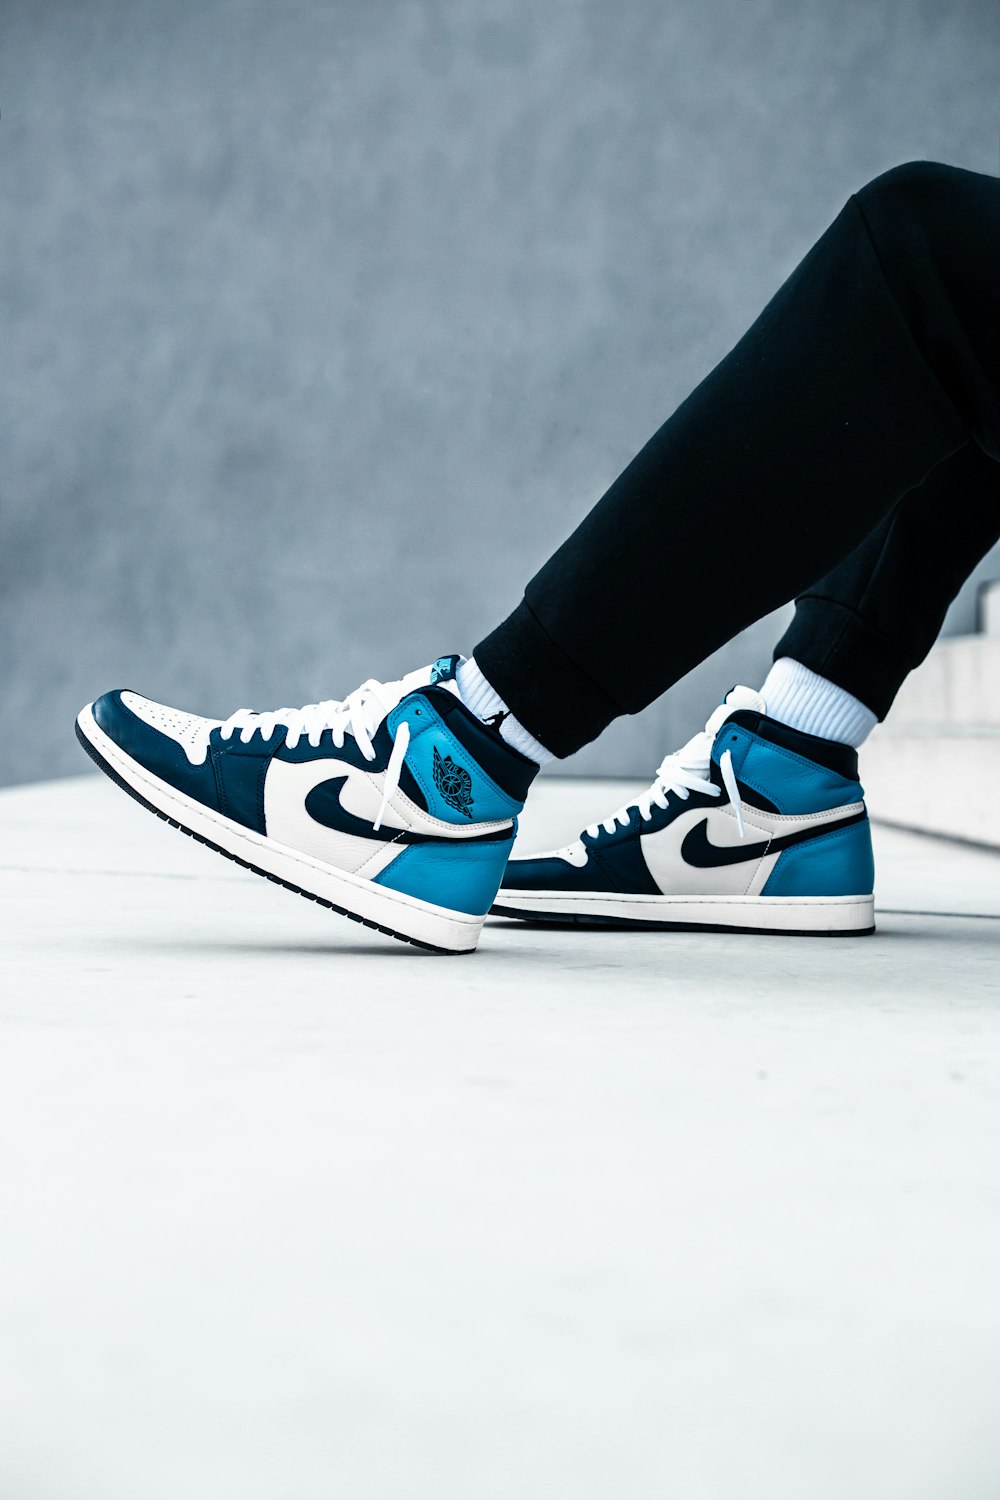 Foto persona con pantalones negros y zapatillas Nike azules y blancas – Imagen Esloveno gratis Unsplash